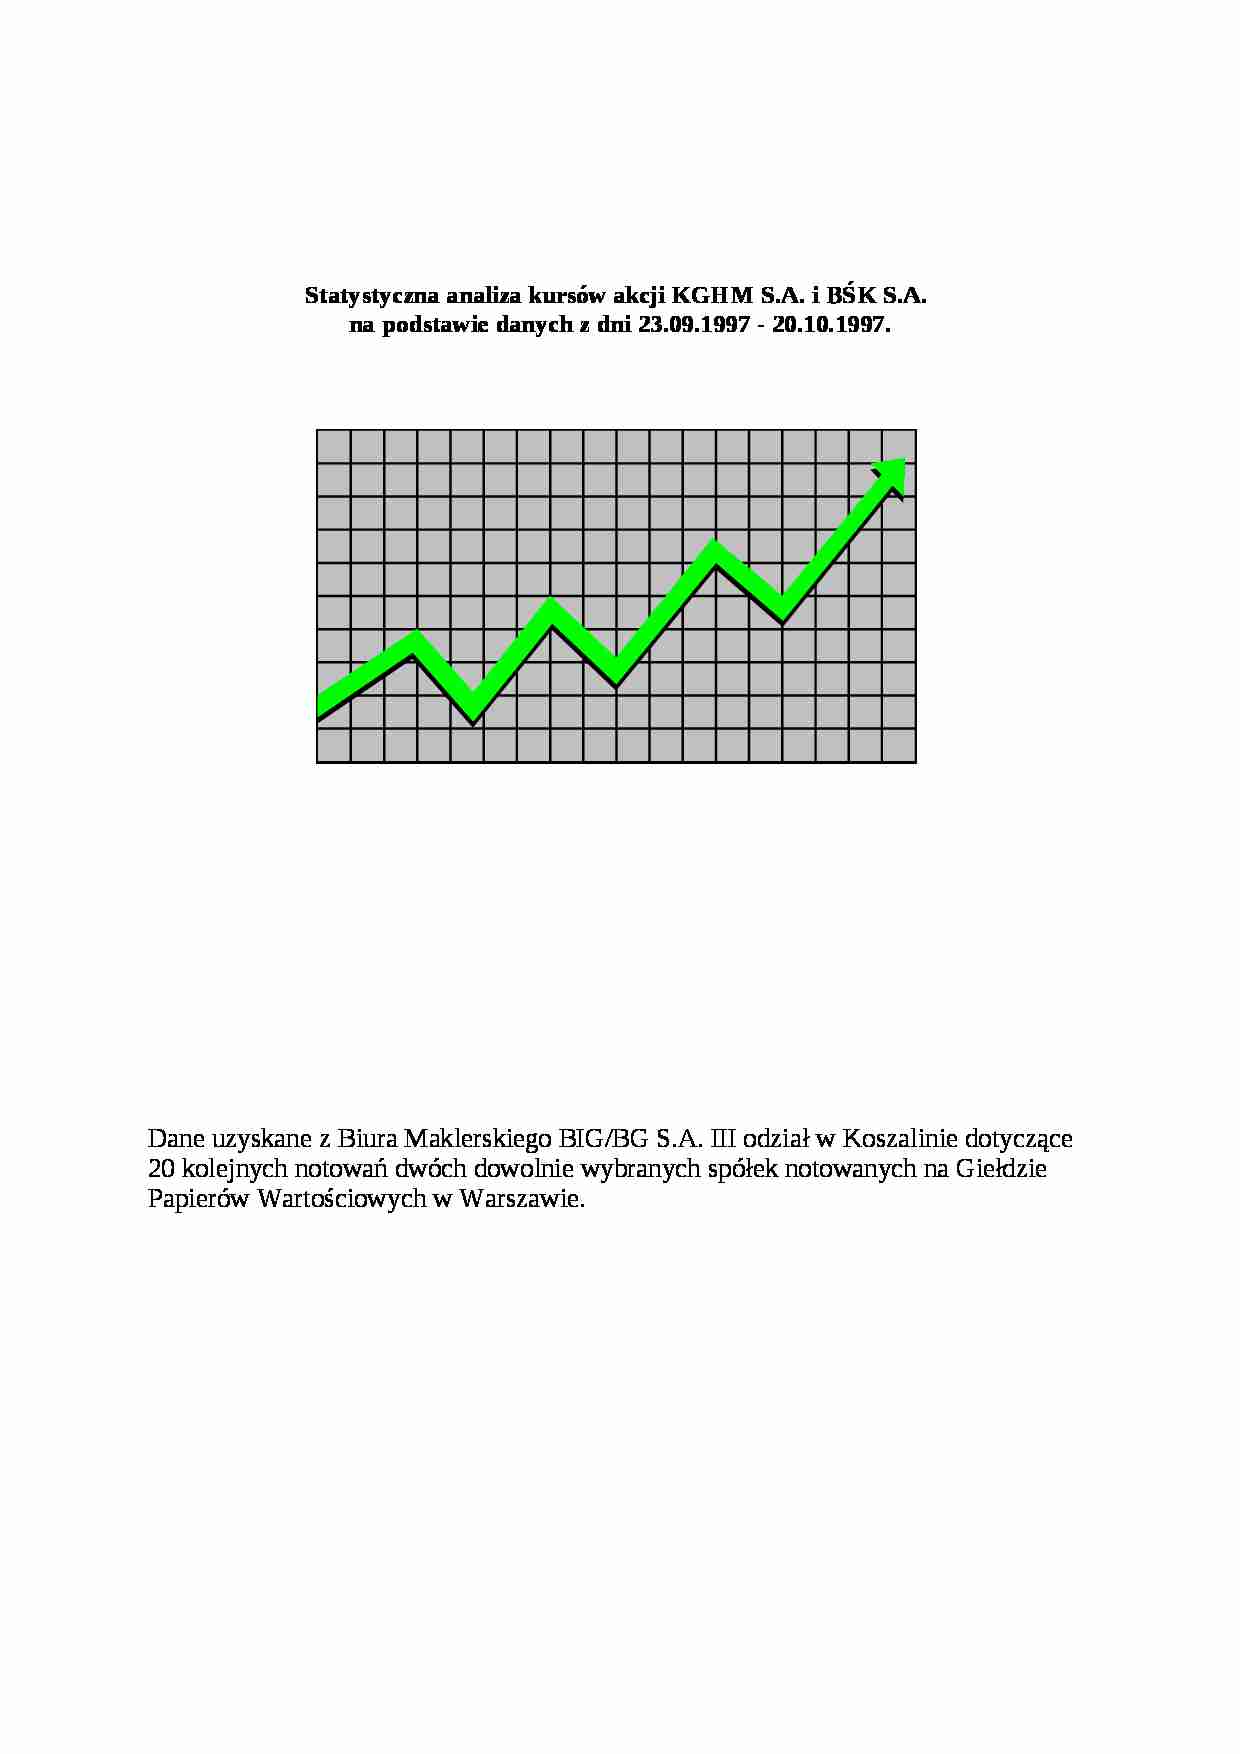 Statystyczna analiza kursów akcji - strona 1